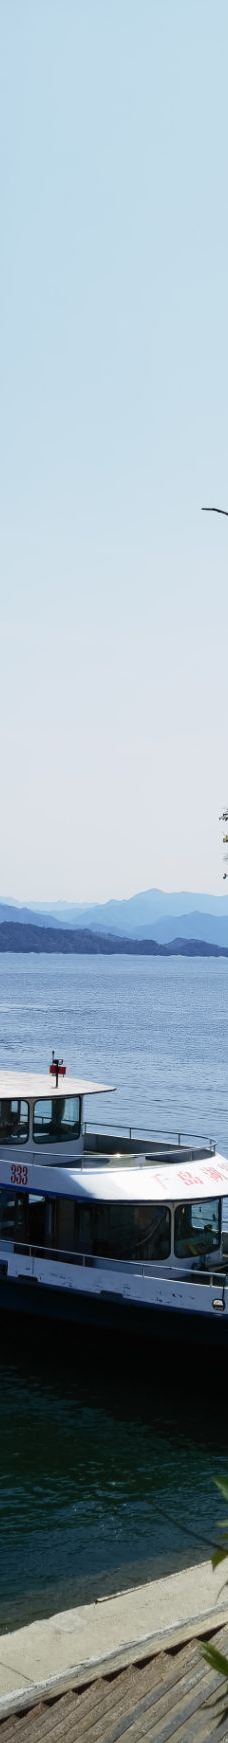 千岛湖景区-淳安